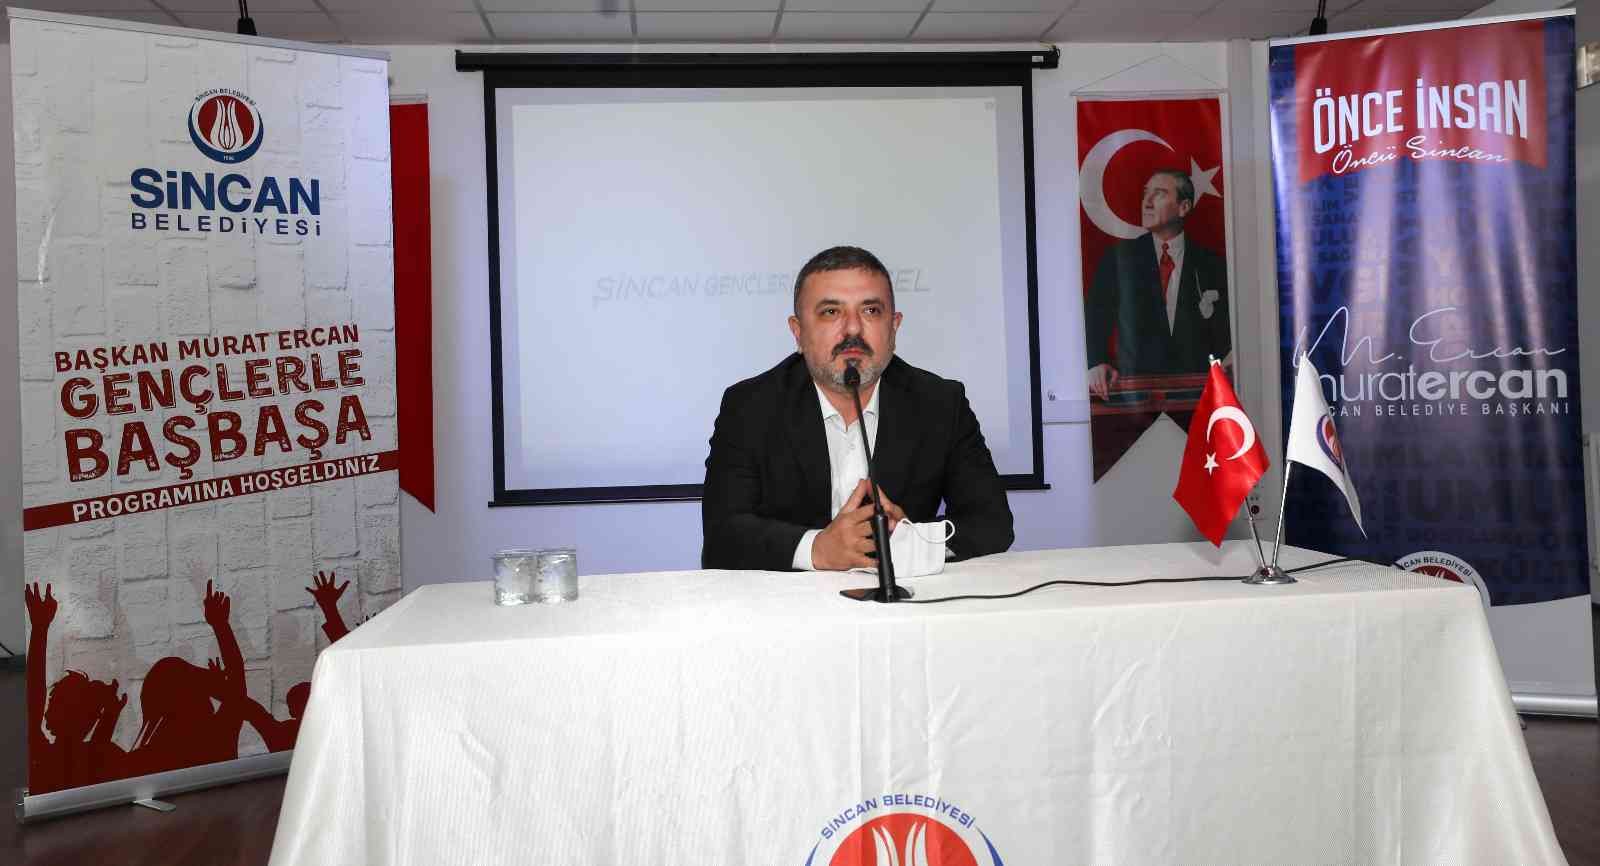 Sincan Belediye Başkanı Ercan “Gençlerle Baş Başa” programına devam ediyor #ankara